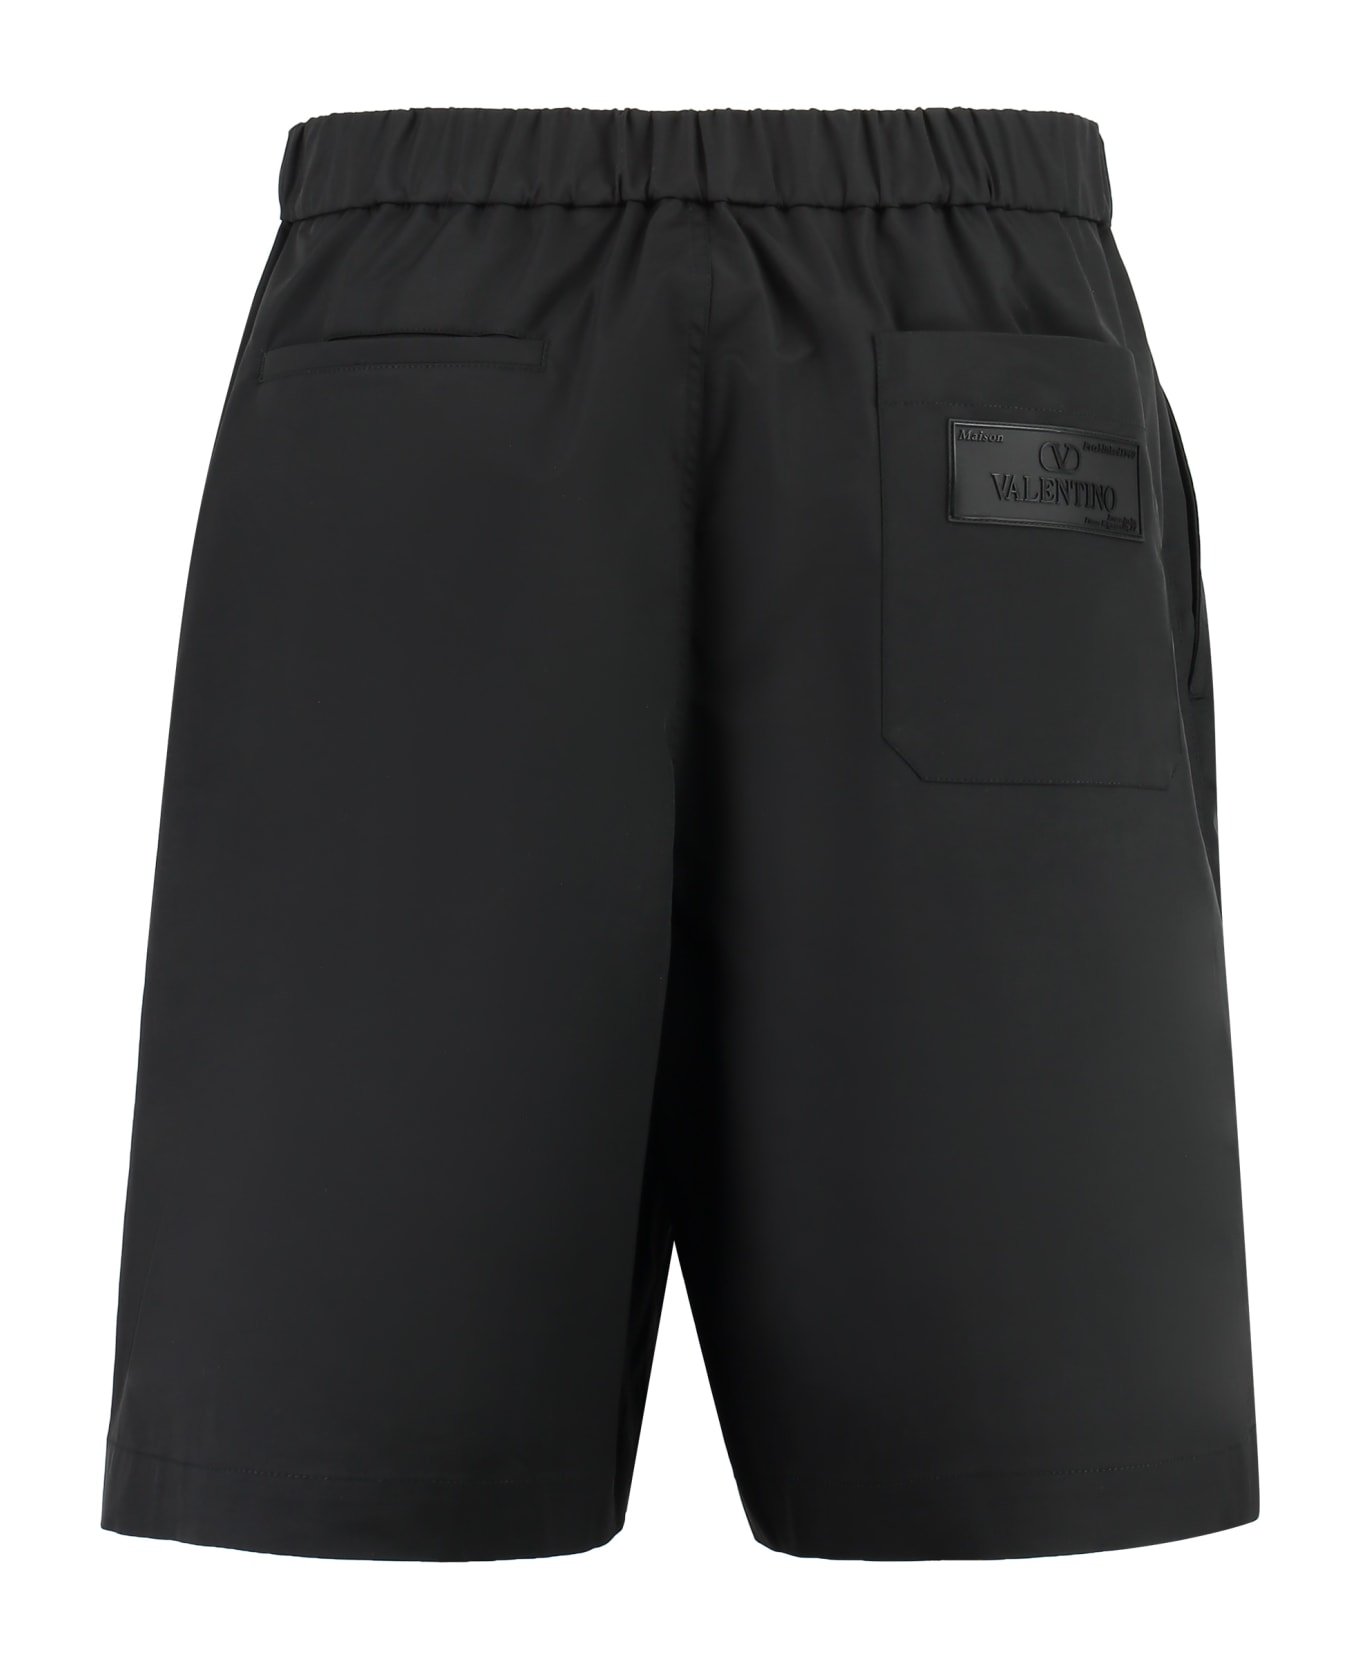 Valentino Nylon Bermuda Shorts - black